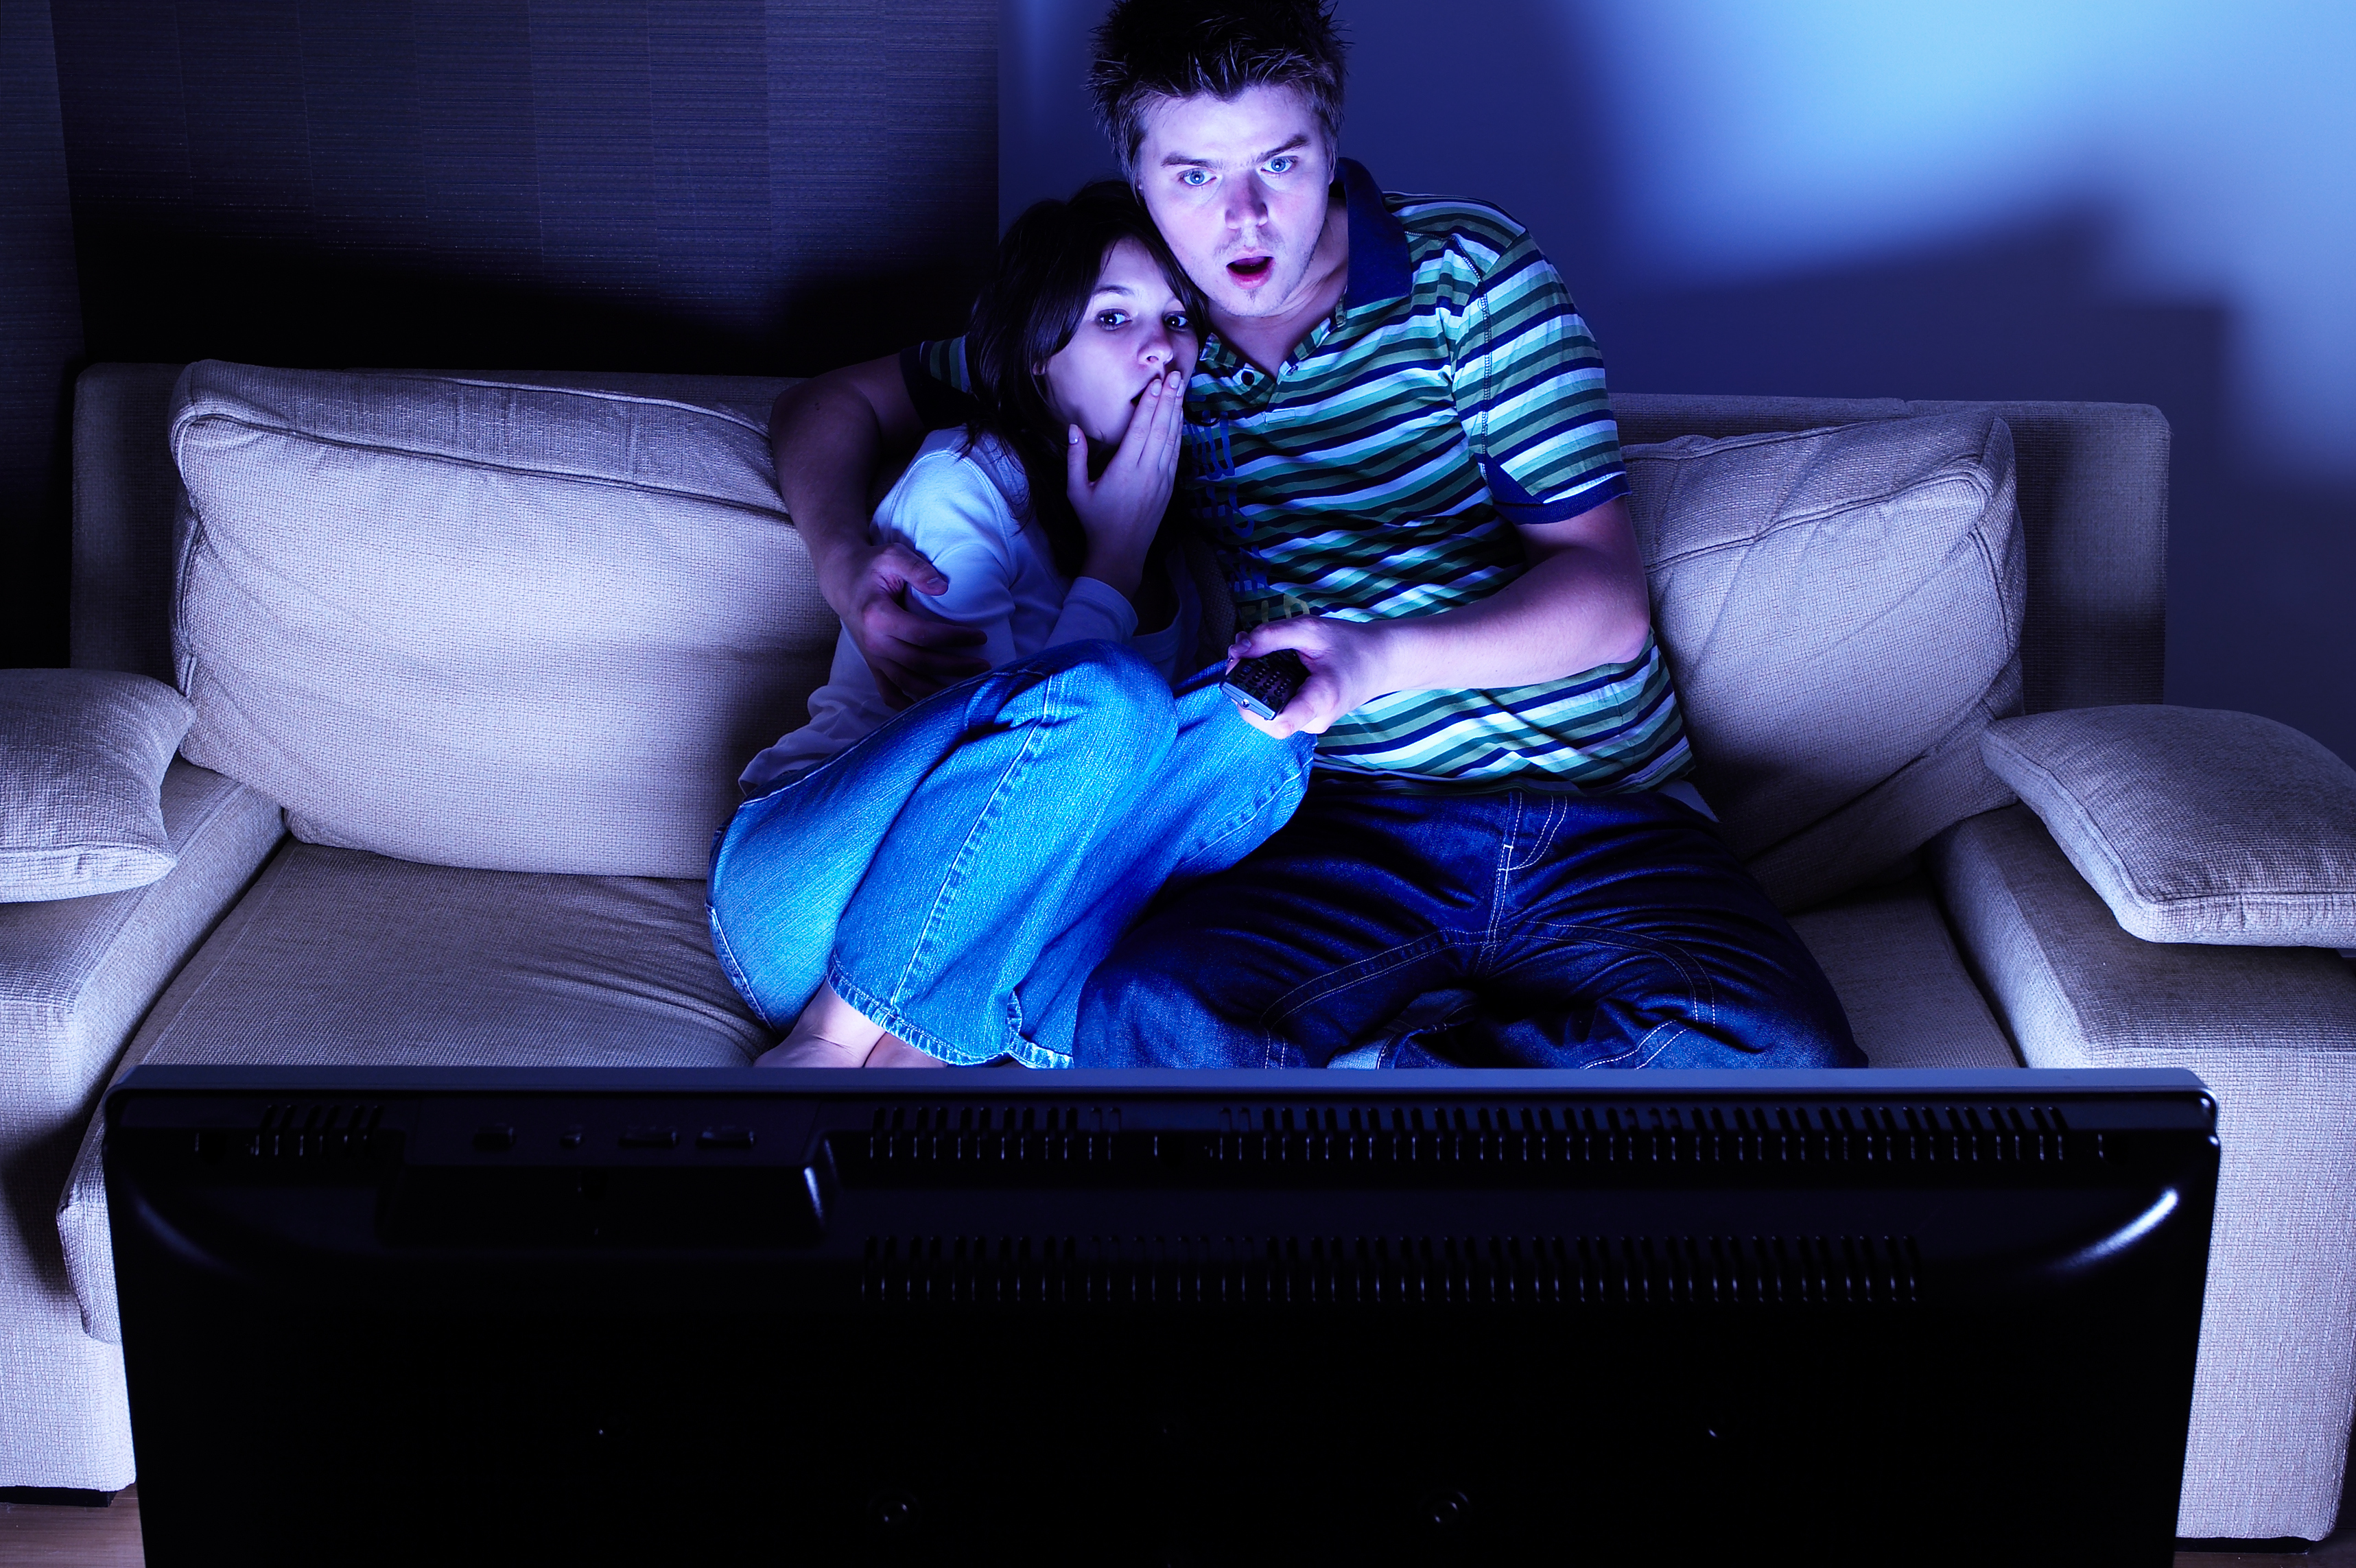 Couple-Watching-TV-Credit-iStock-144800570